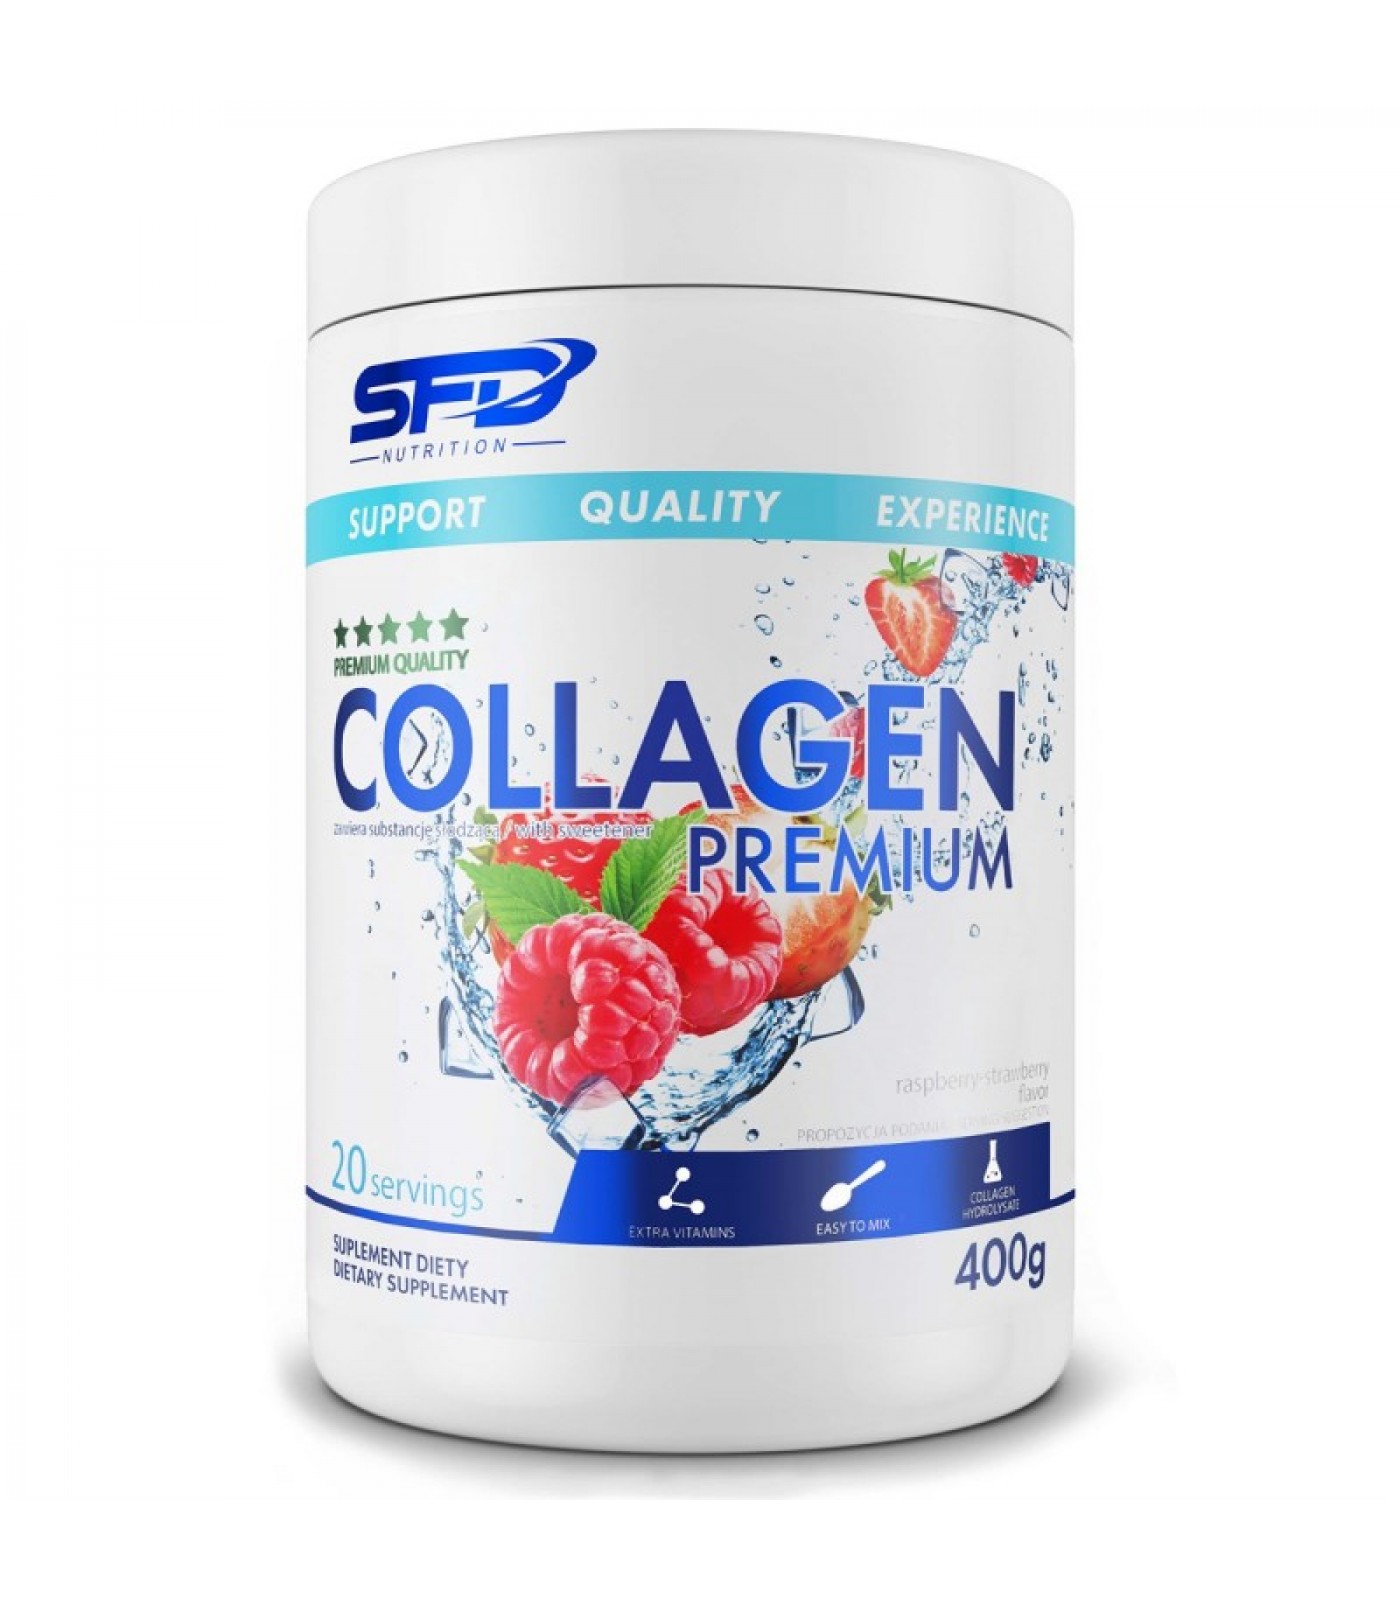 SFD Collagen Premium - Колаген